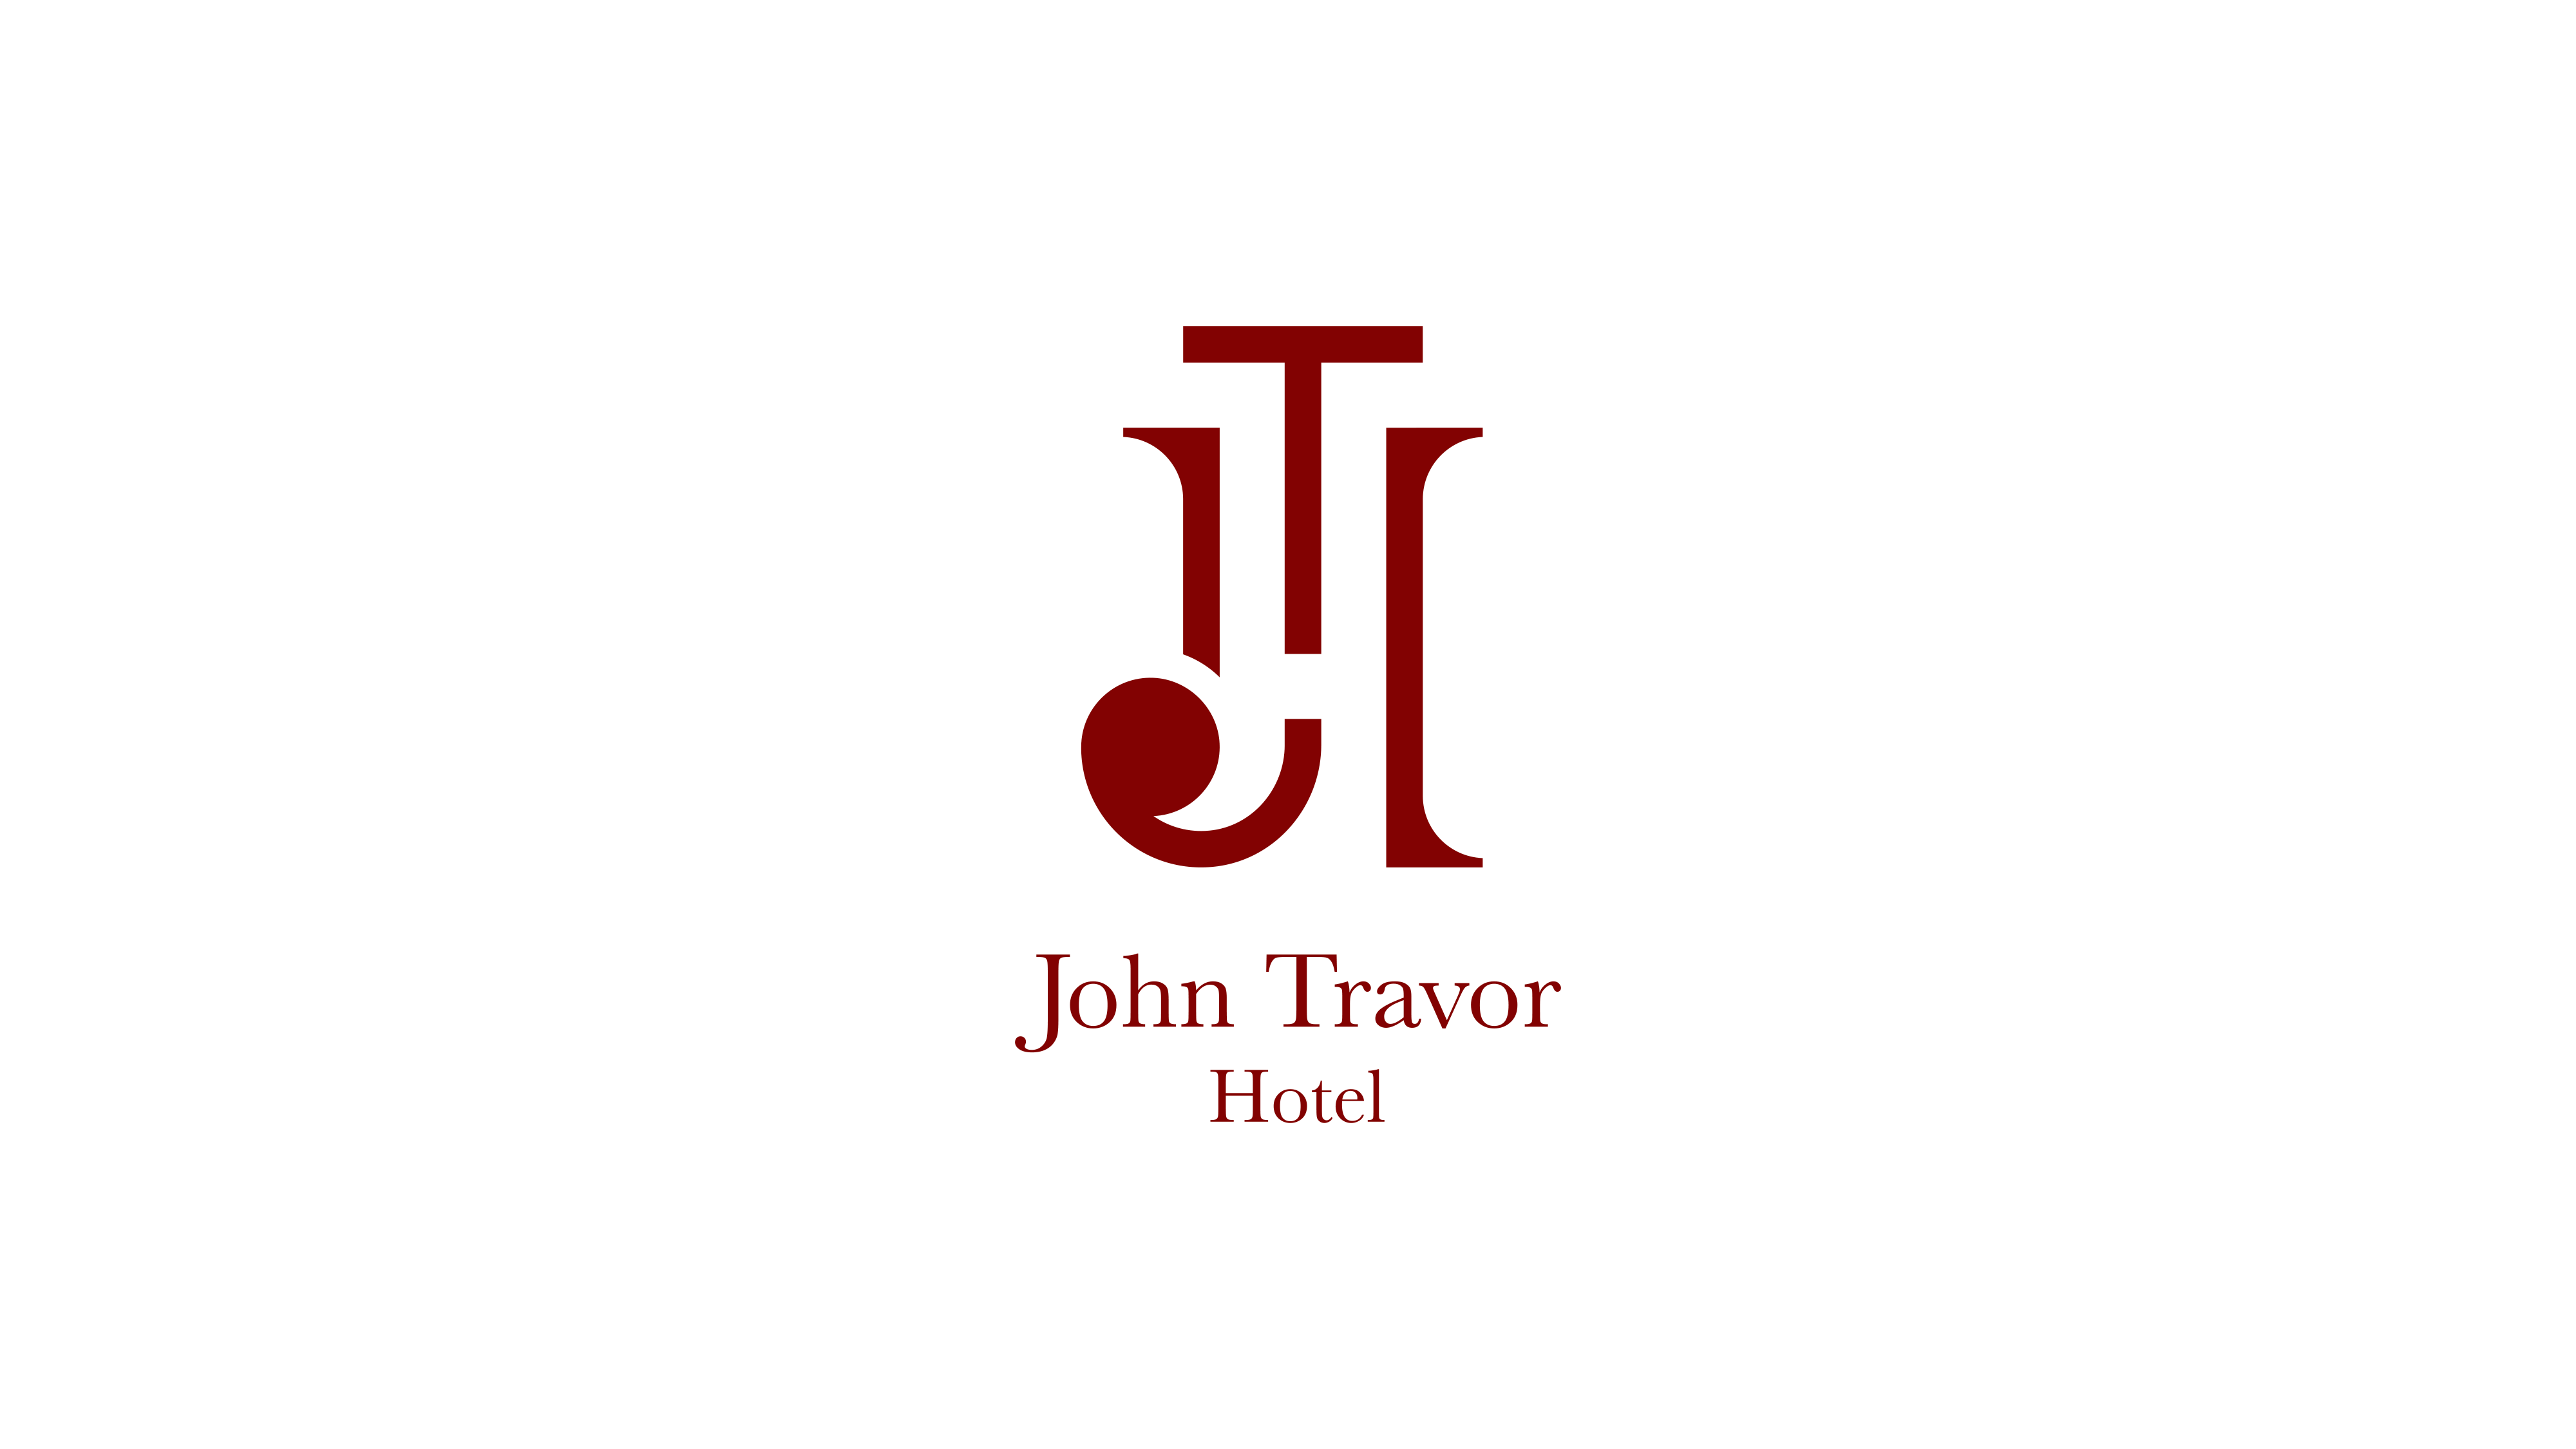 Logo bordeaux di John Travor Hotel realizzato da SEBA! grafico di Gravellona Toce nel VCO